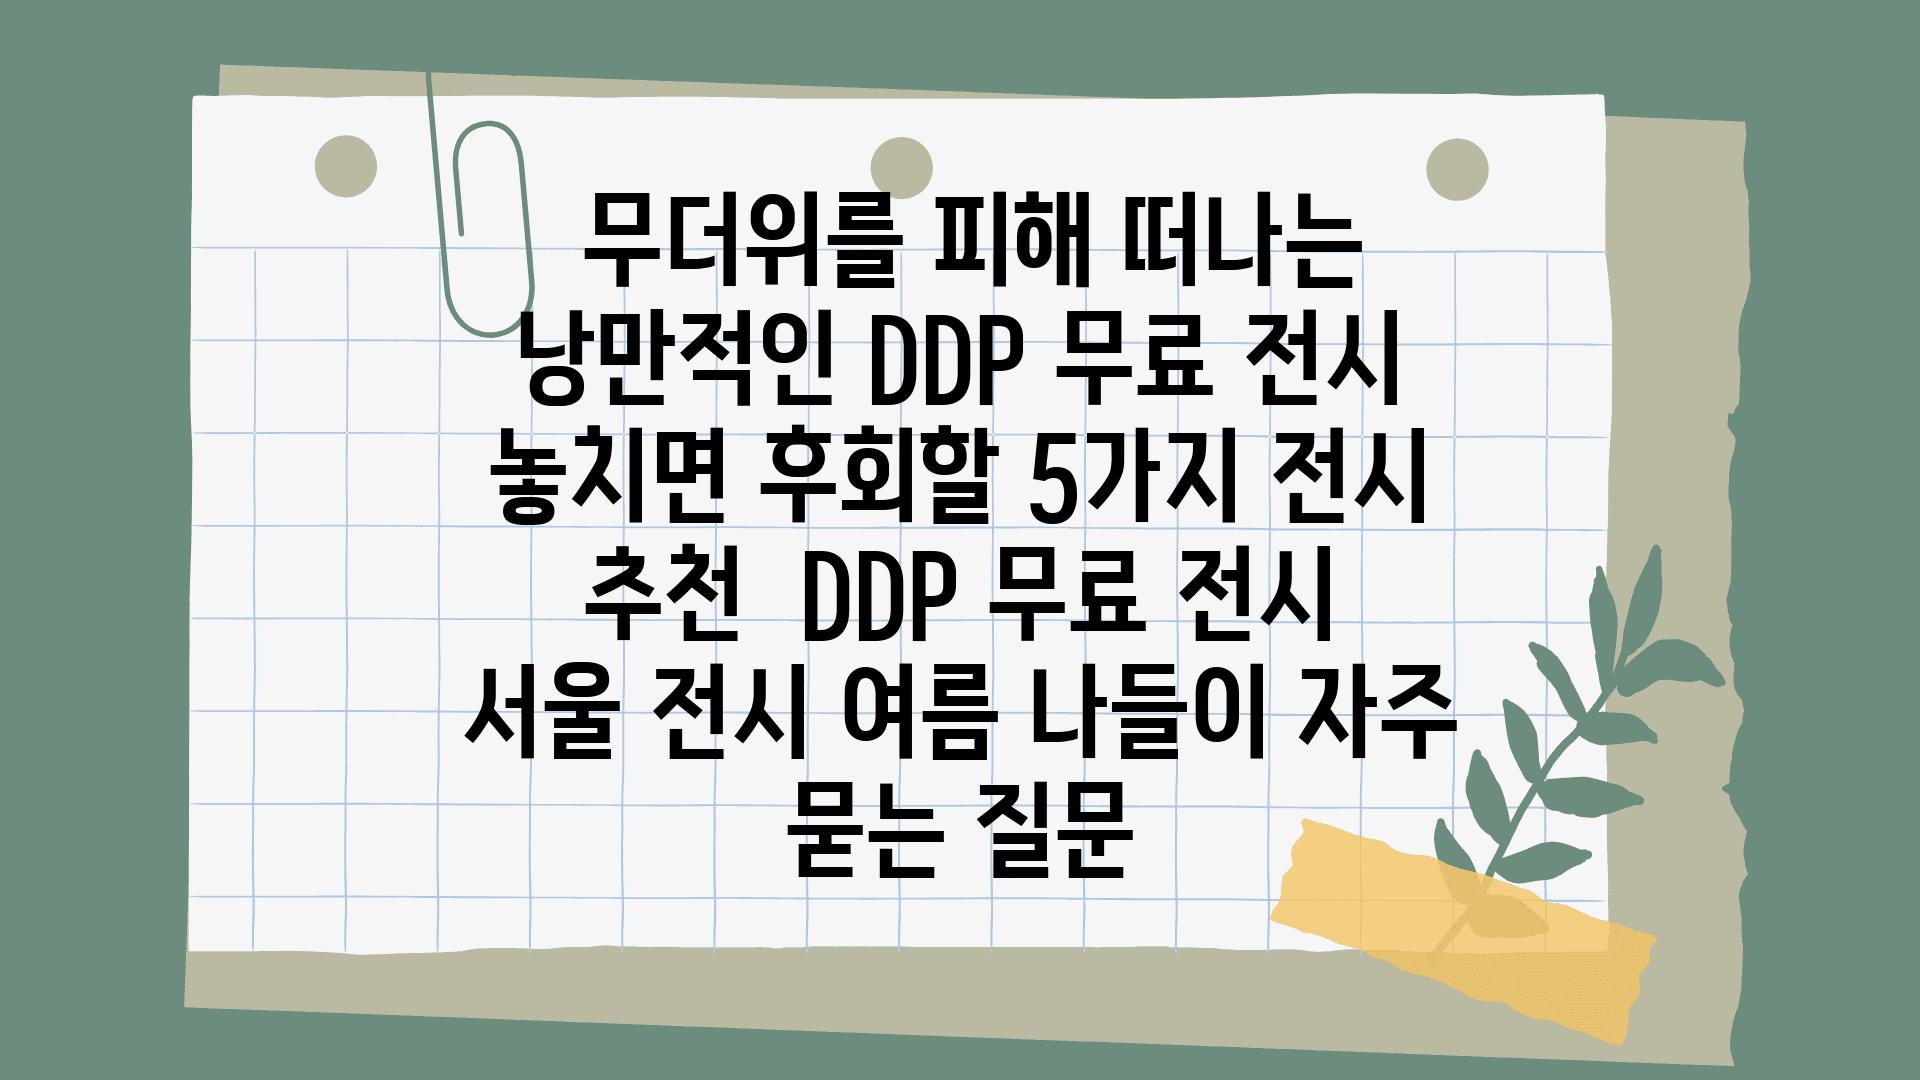  무더위를 피해 떠나는 낭만적인 DDP 무료 전시 놓치면 후회할 5가지 전시 추천  DDP 무료 전시 서울 전시 여름 나들이 자주 묻는 질문